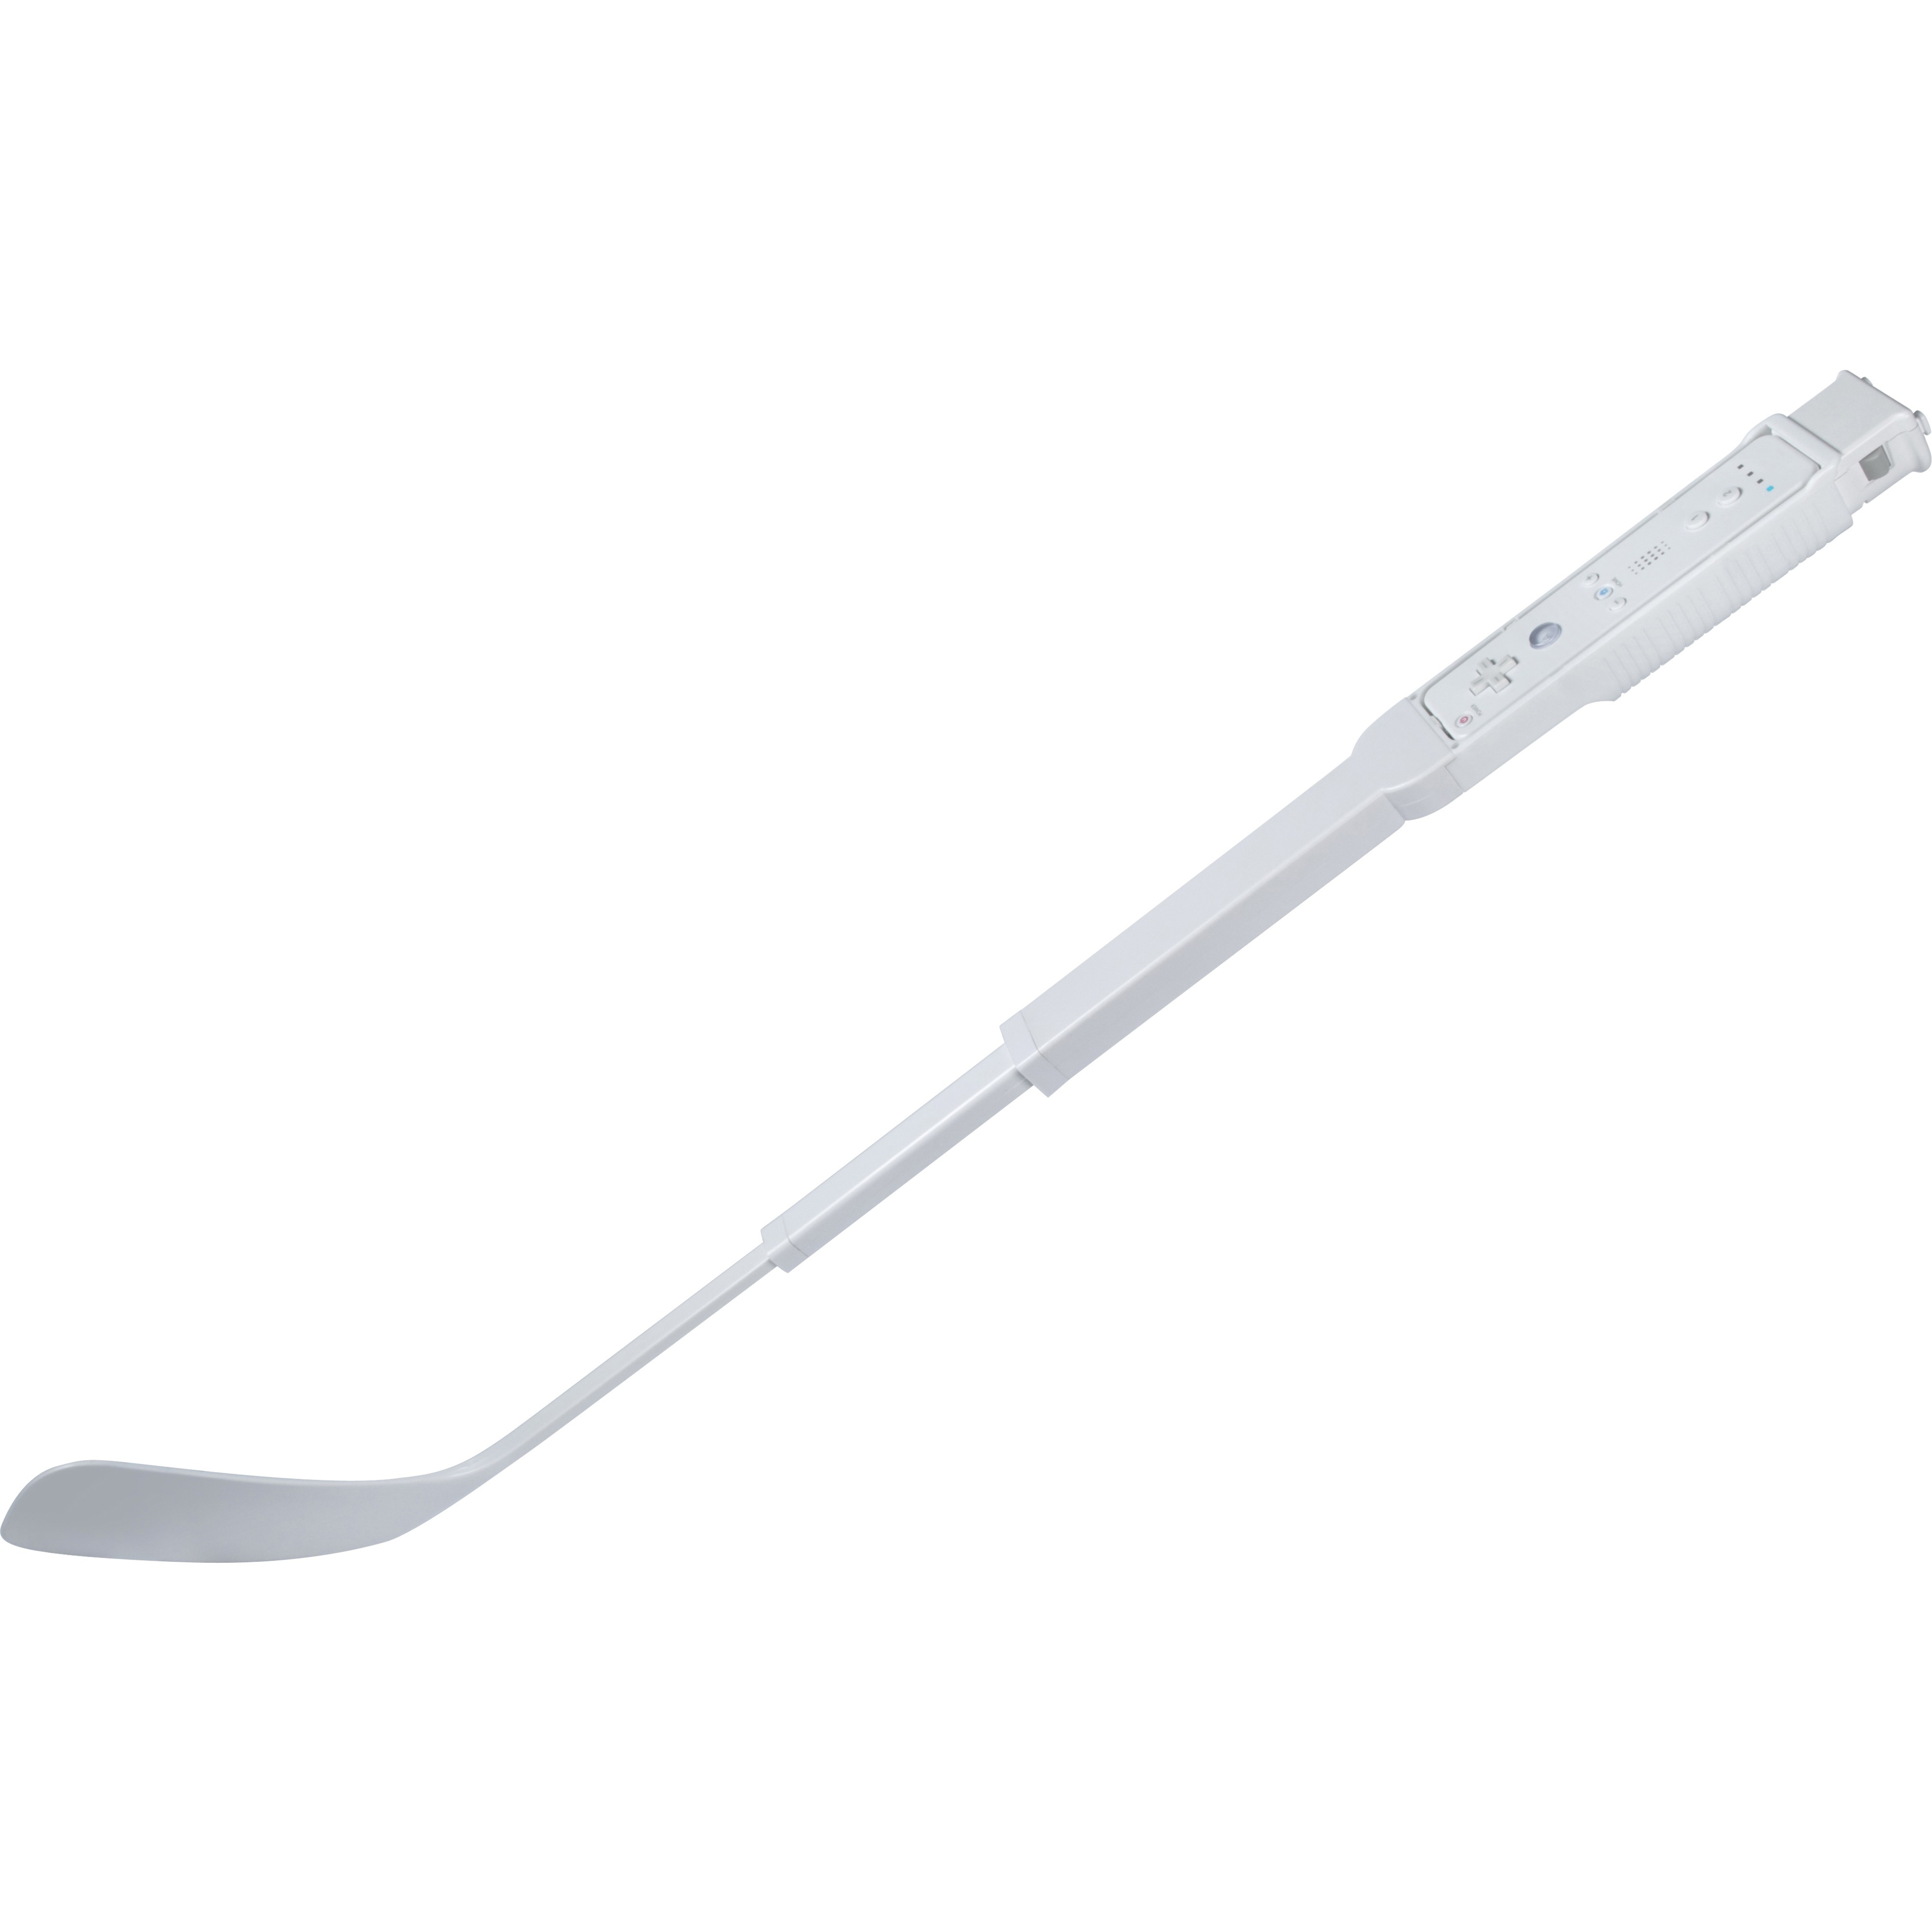 CTA Digital WI-HKY Hockey Stick - image 1 of 3